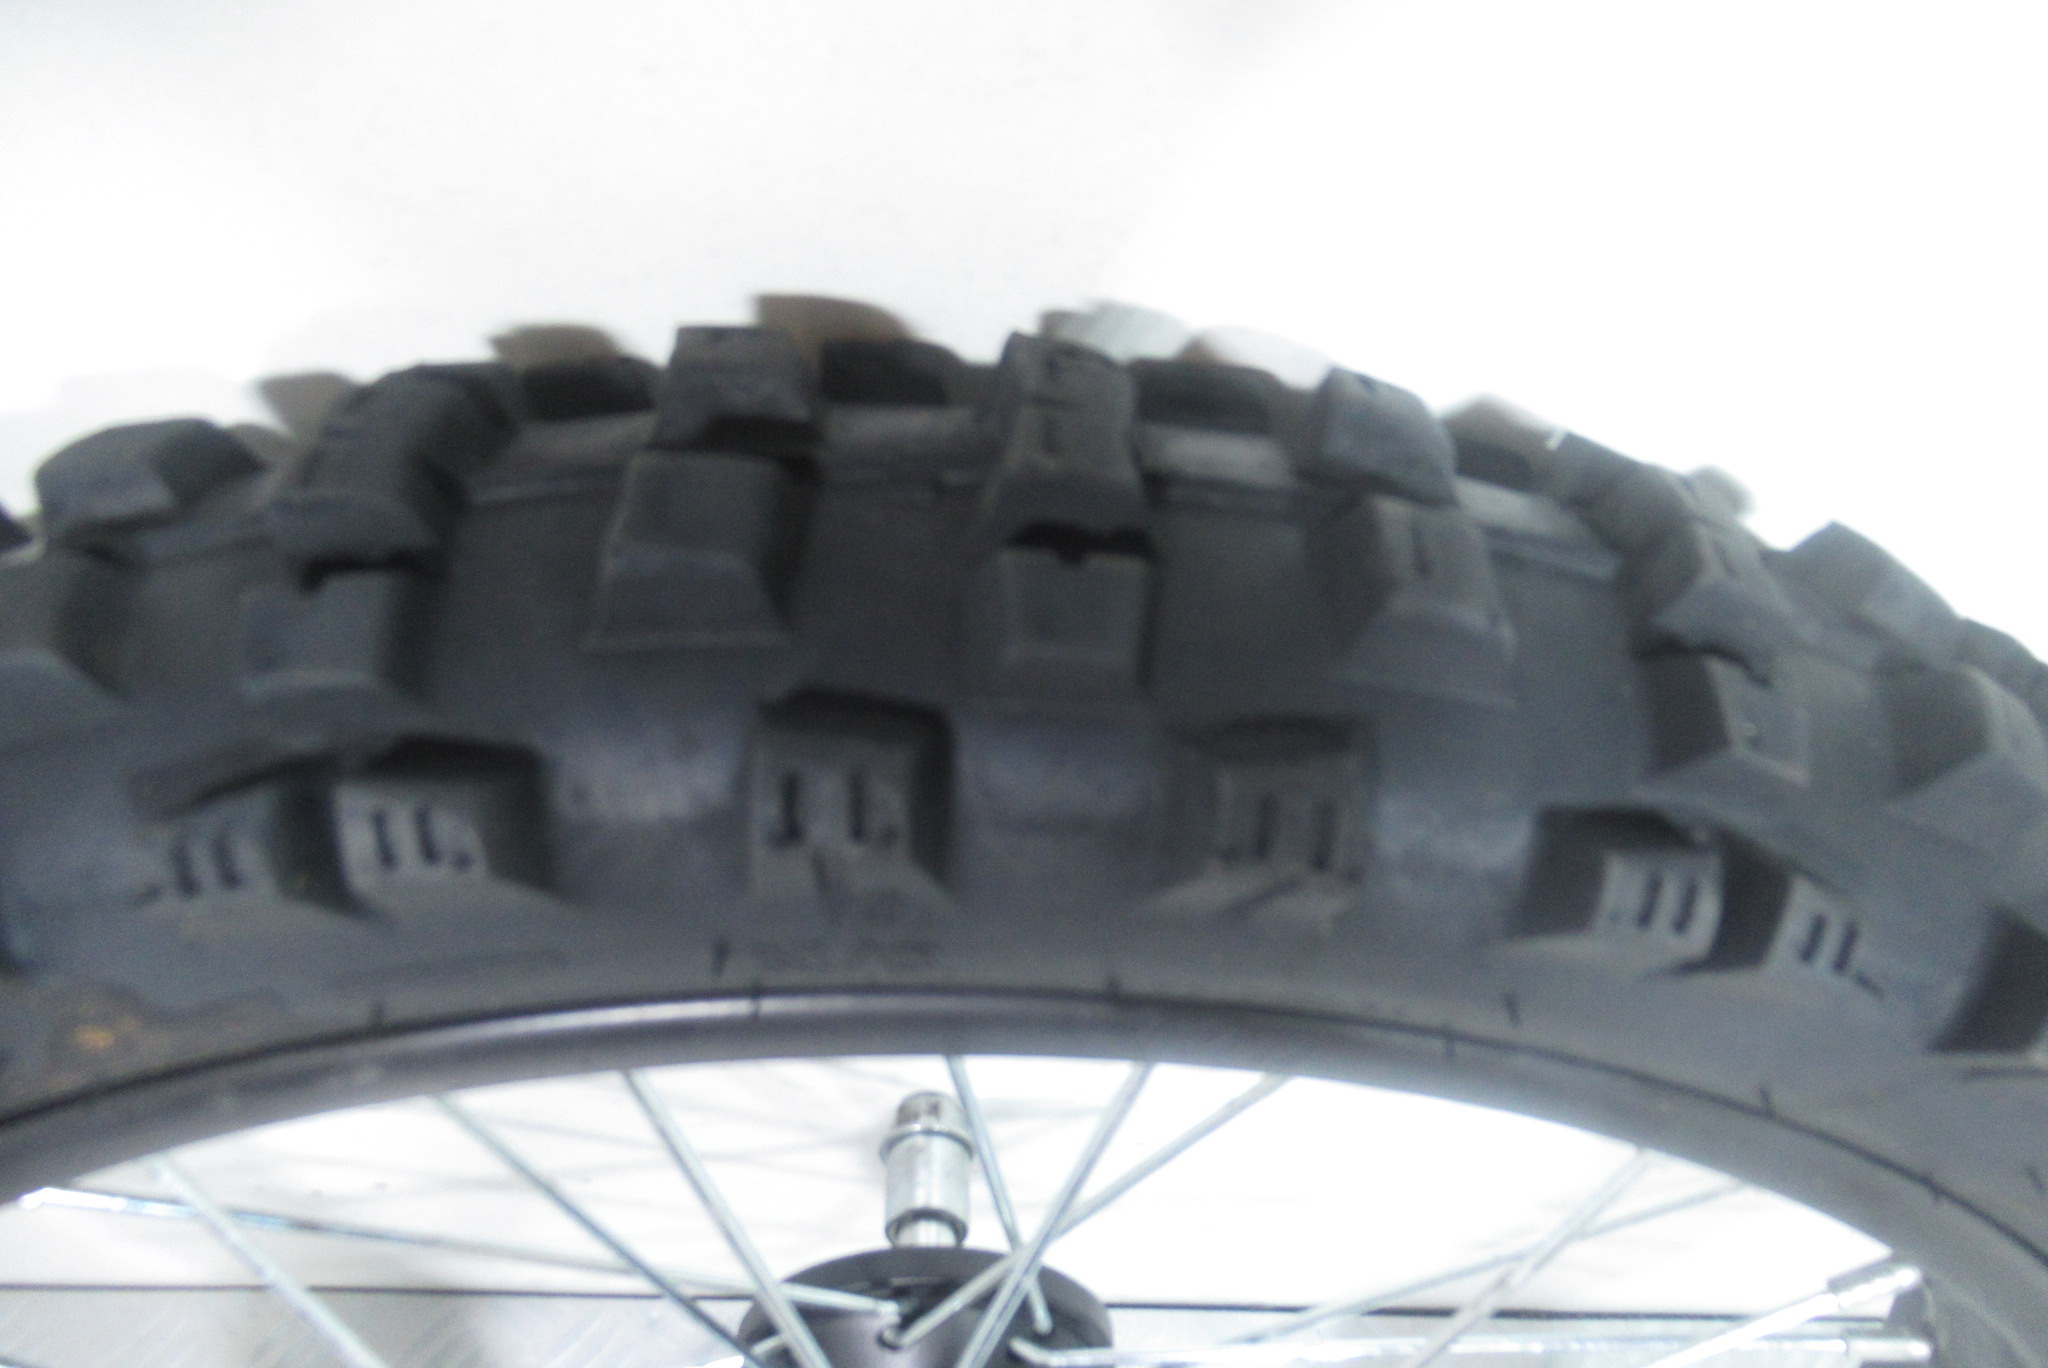 Roue avant Dirt Bike MX Drift 140 4t (70/100-17) (1.6×17)